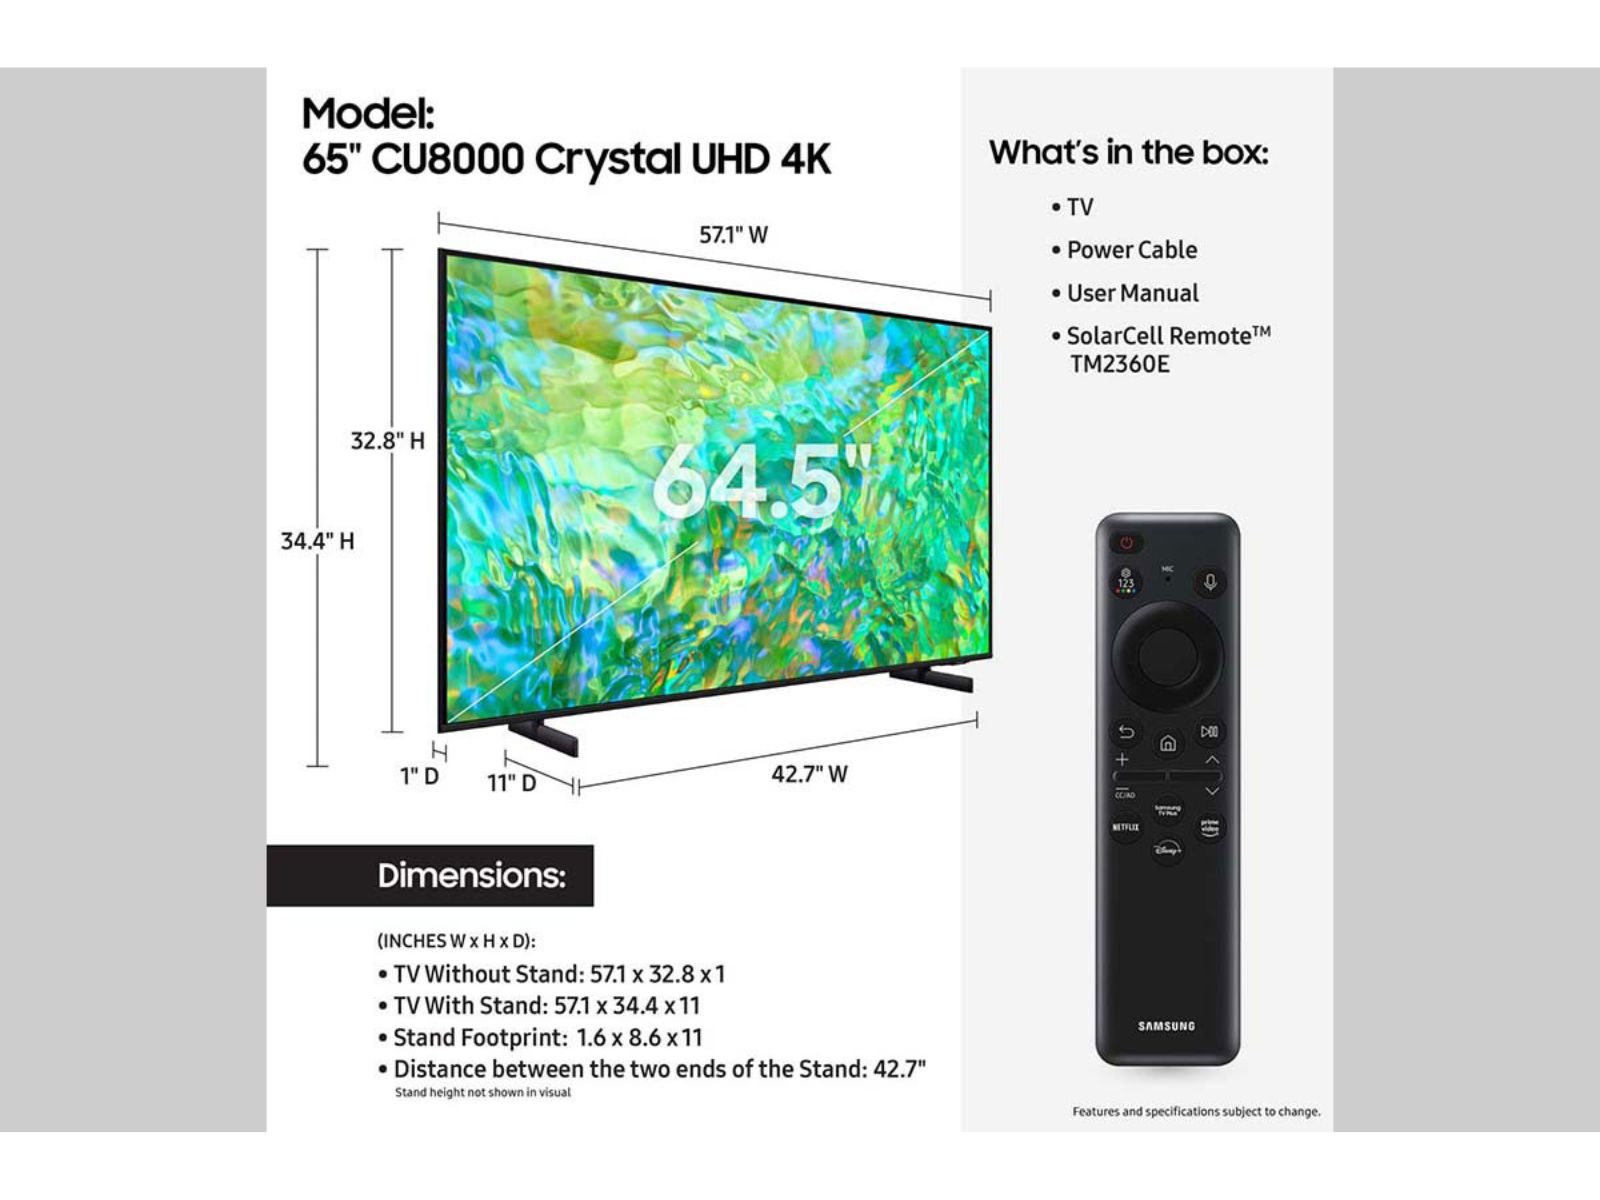 Televisor Samsung 65 pulgadas Crystal UHD Smart TV 4K